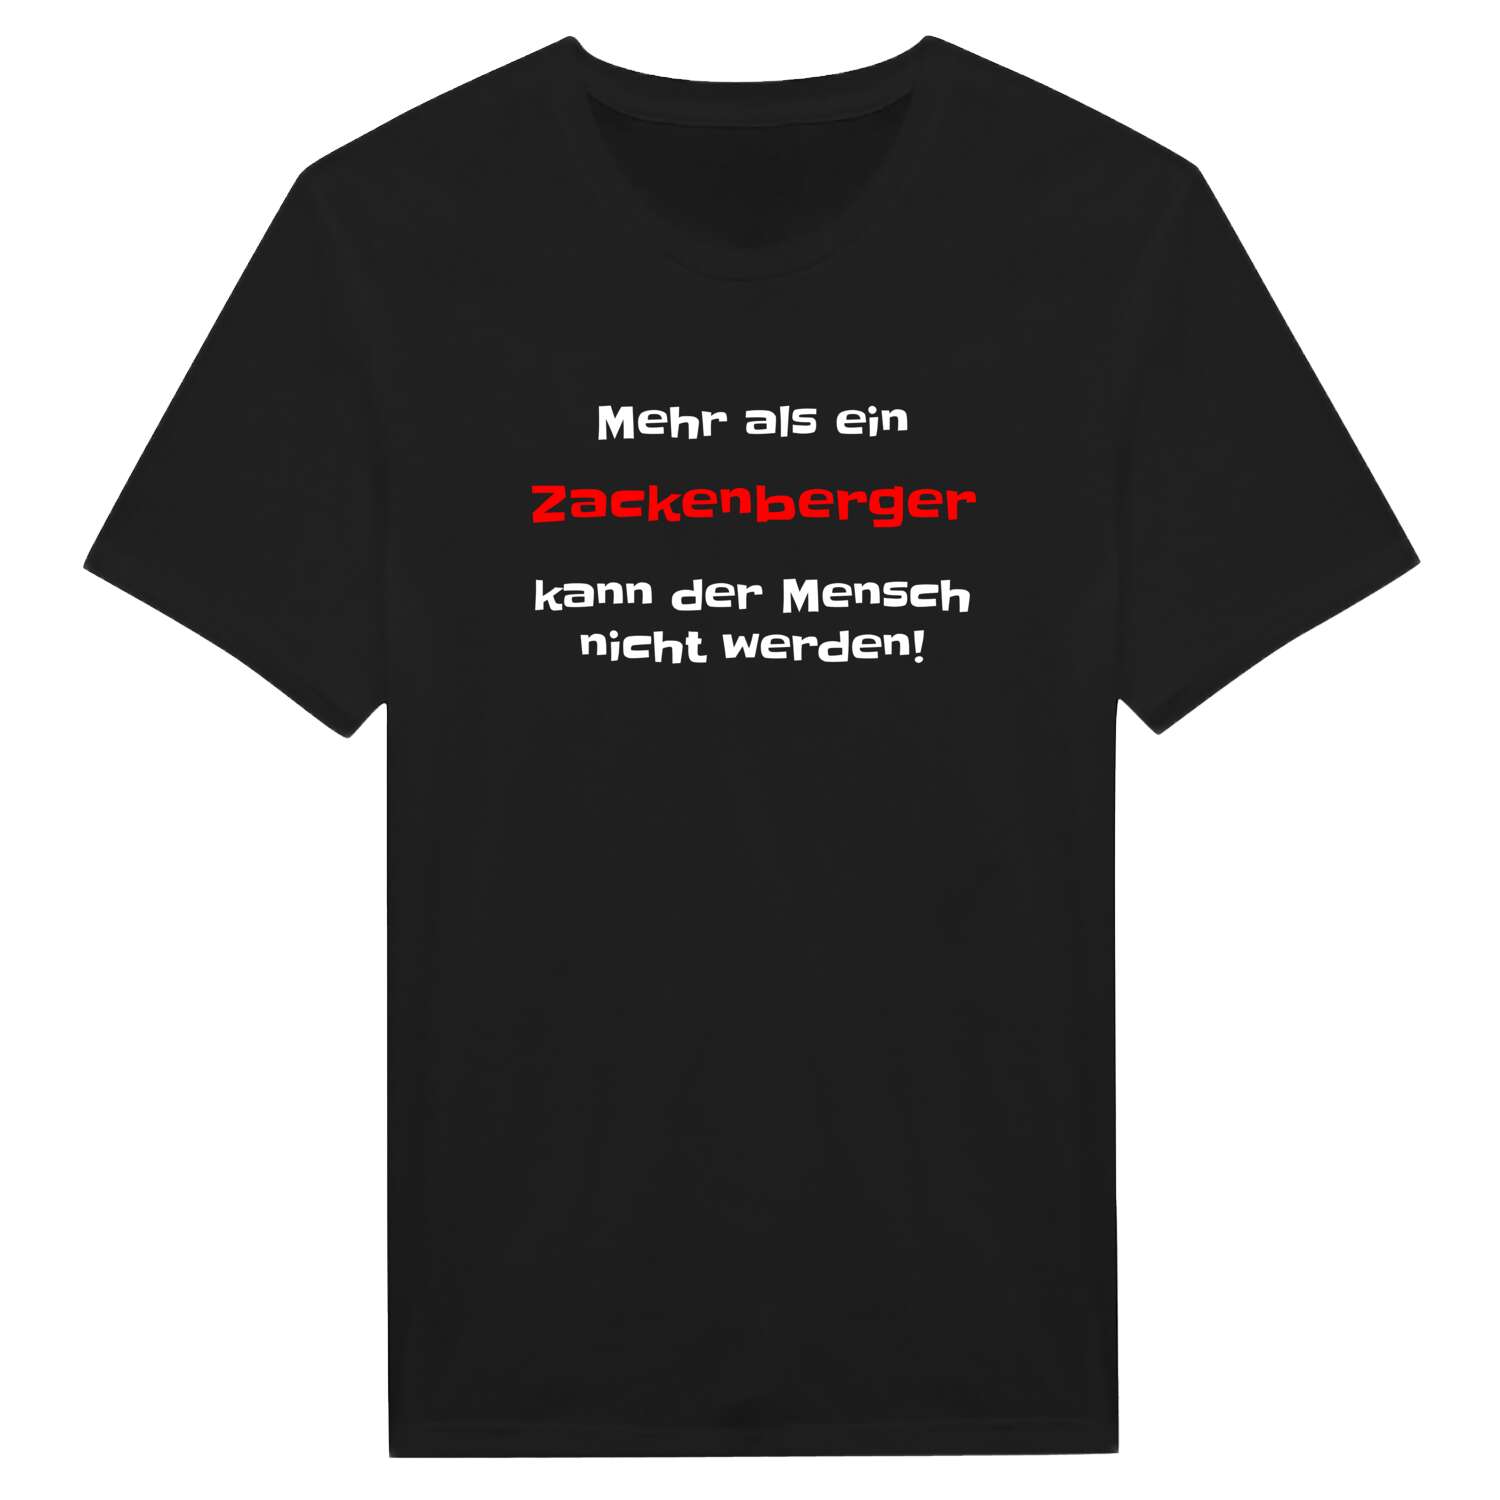 Zackenberg T-Shirt »Mehr als ein«